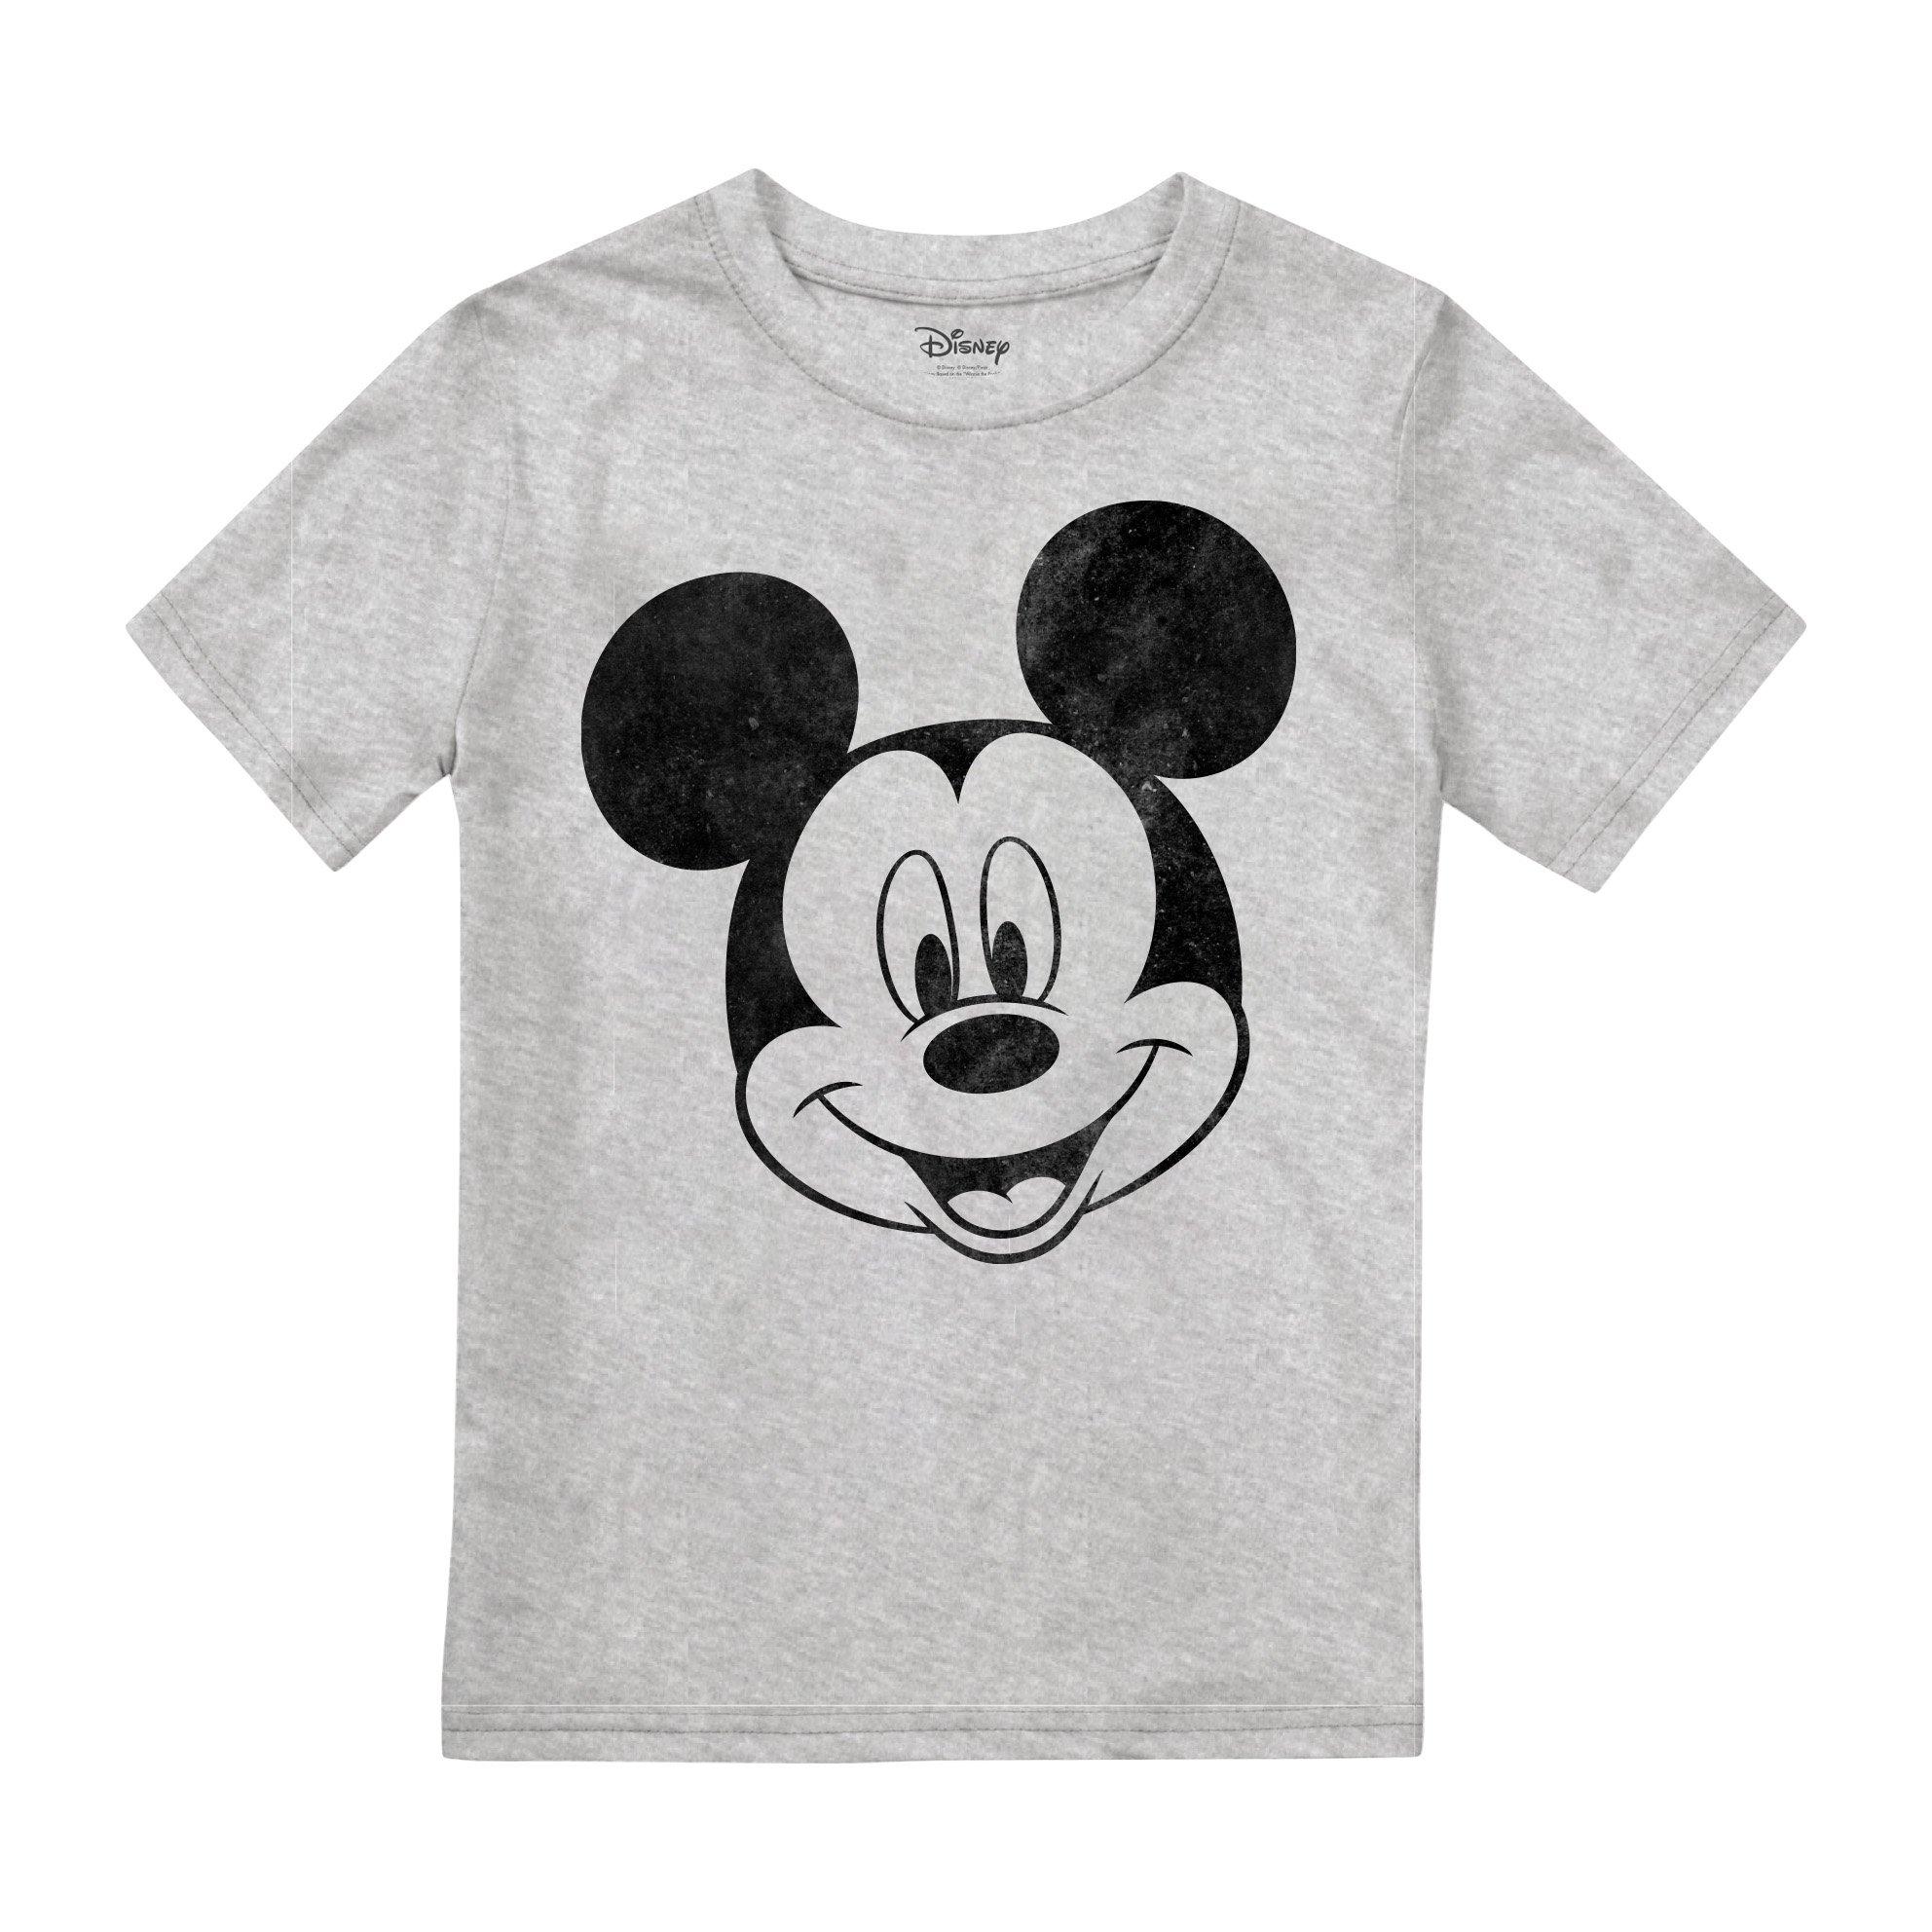 Однотонная футболка с Микки Маусом Disney, серый пазл микки и минни маус для детей и взрослых 1000